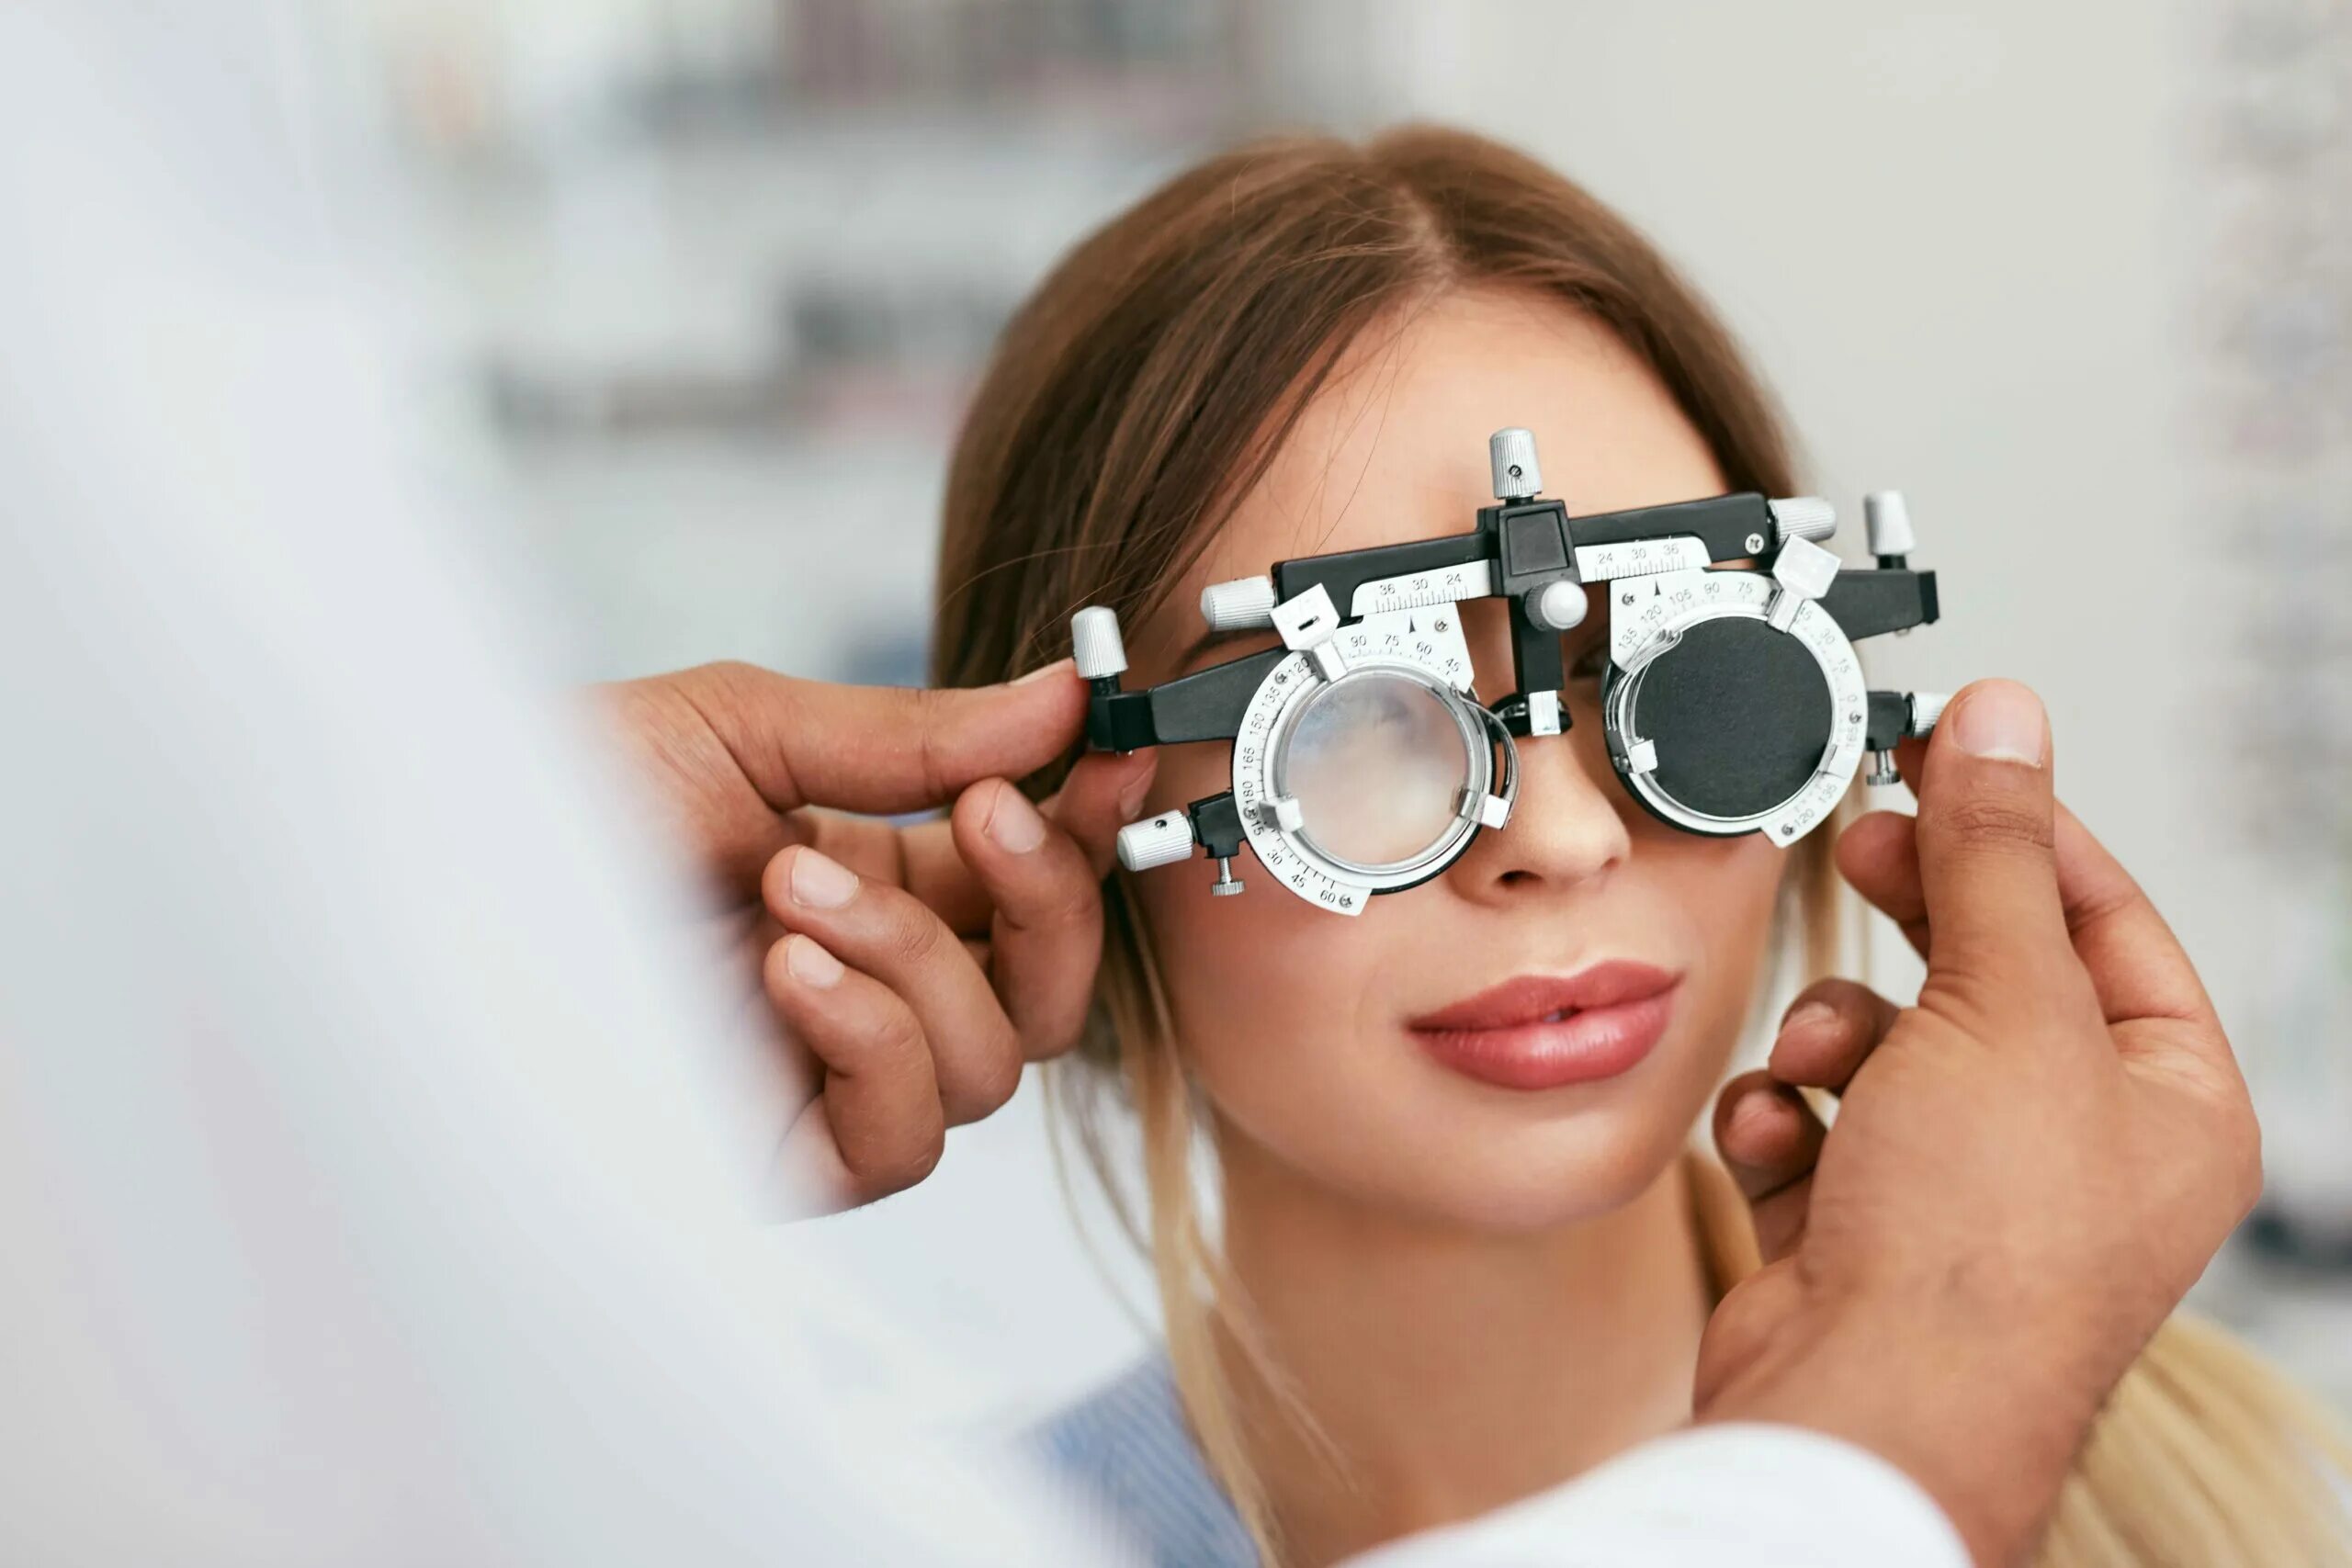 Очки окулиста. Оптика в очках. Офтальмология зрение очки. Очки для зрения окулист.